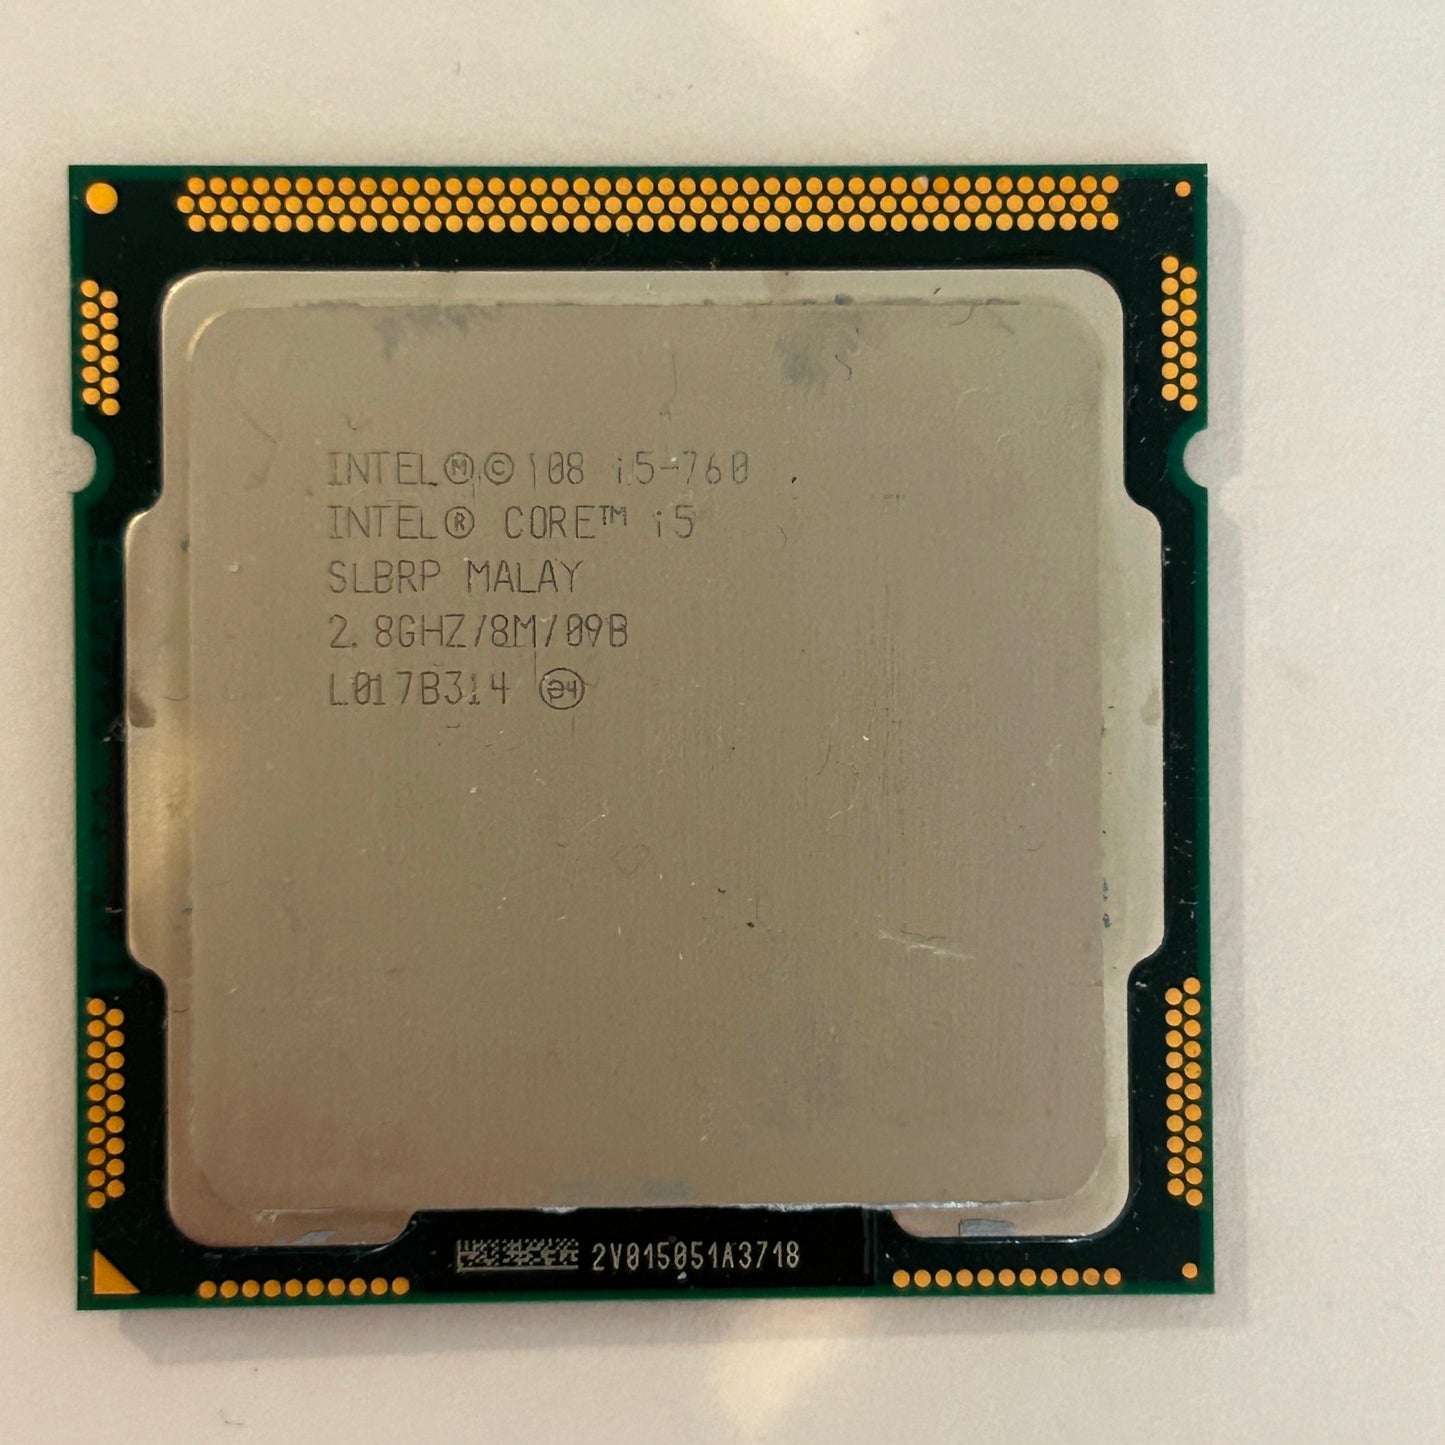 Intel Core i5 CPU 760 @ 2.80GHz CPU